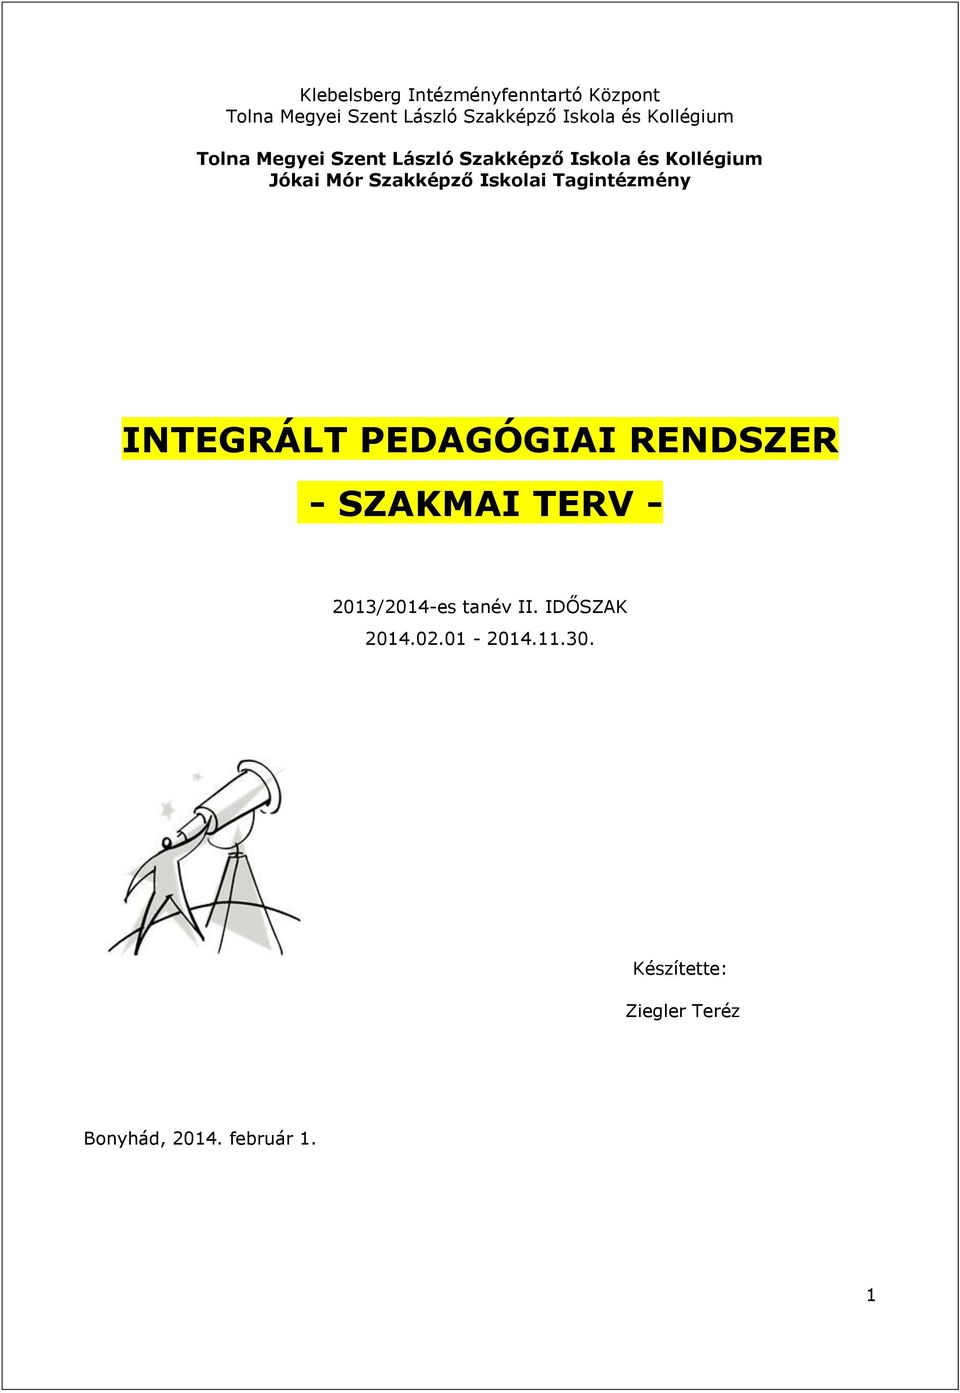 és Kollégium INTEGRÁLT PEDAGÓGIAI RENDSZER - SZAKMAI TERV - 20/204-es